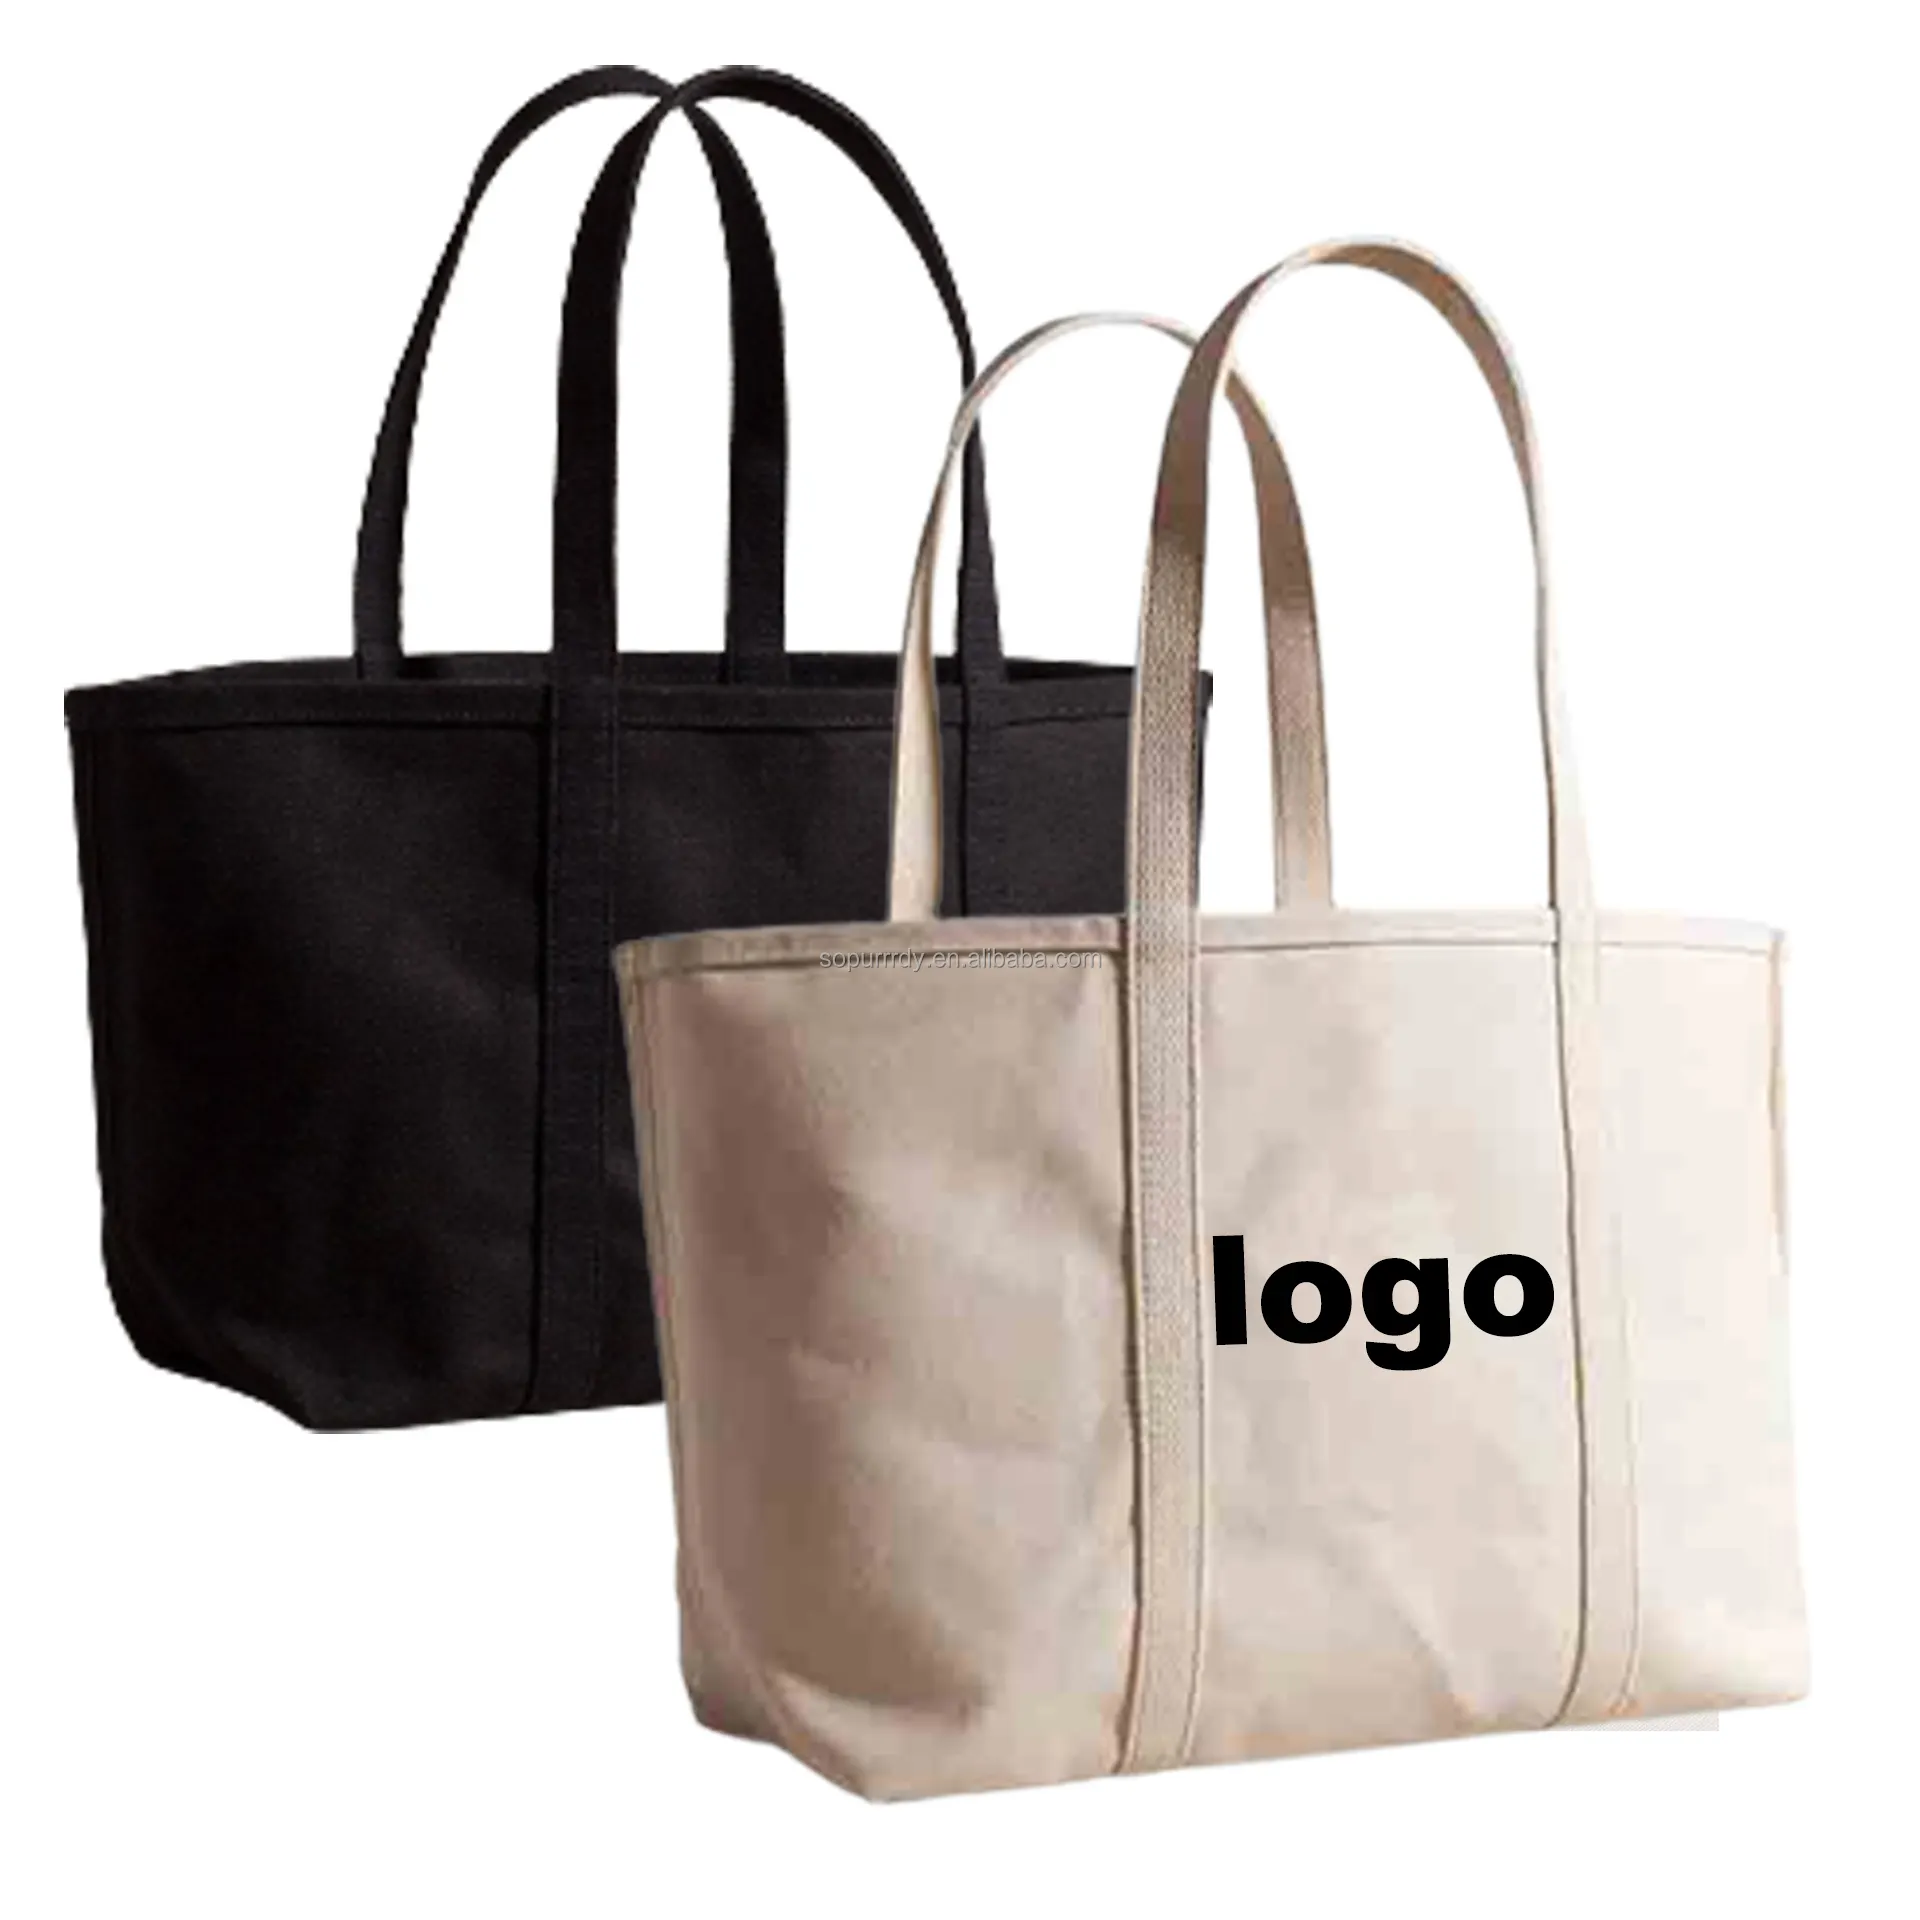 Luxury Fashion Logo personalizzato stampato Private Label Oem Low Moq Cotton Tote Canvas Shopping Tote Bags borse per le donne